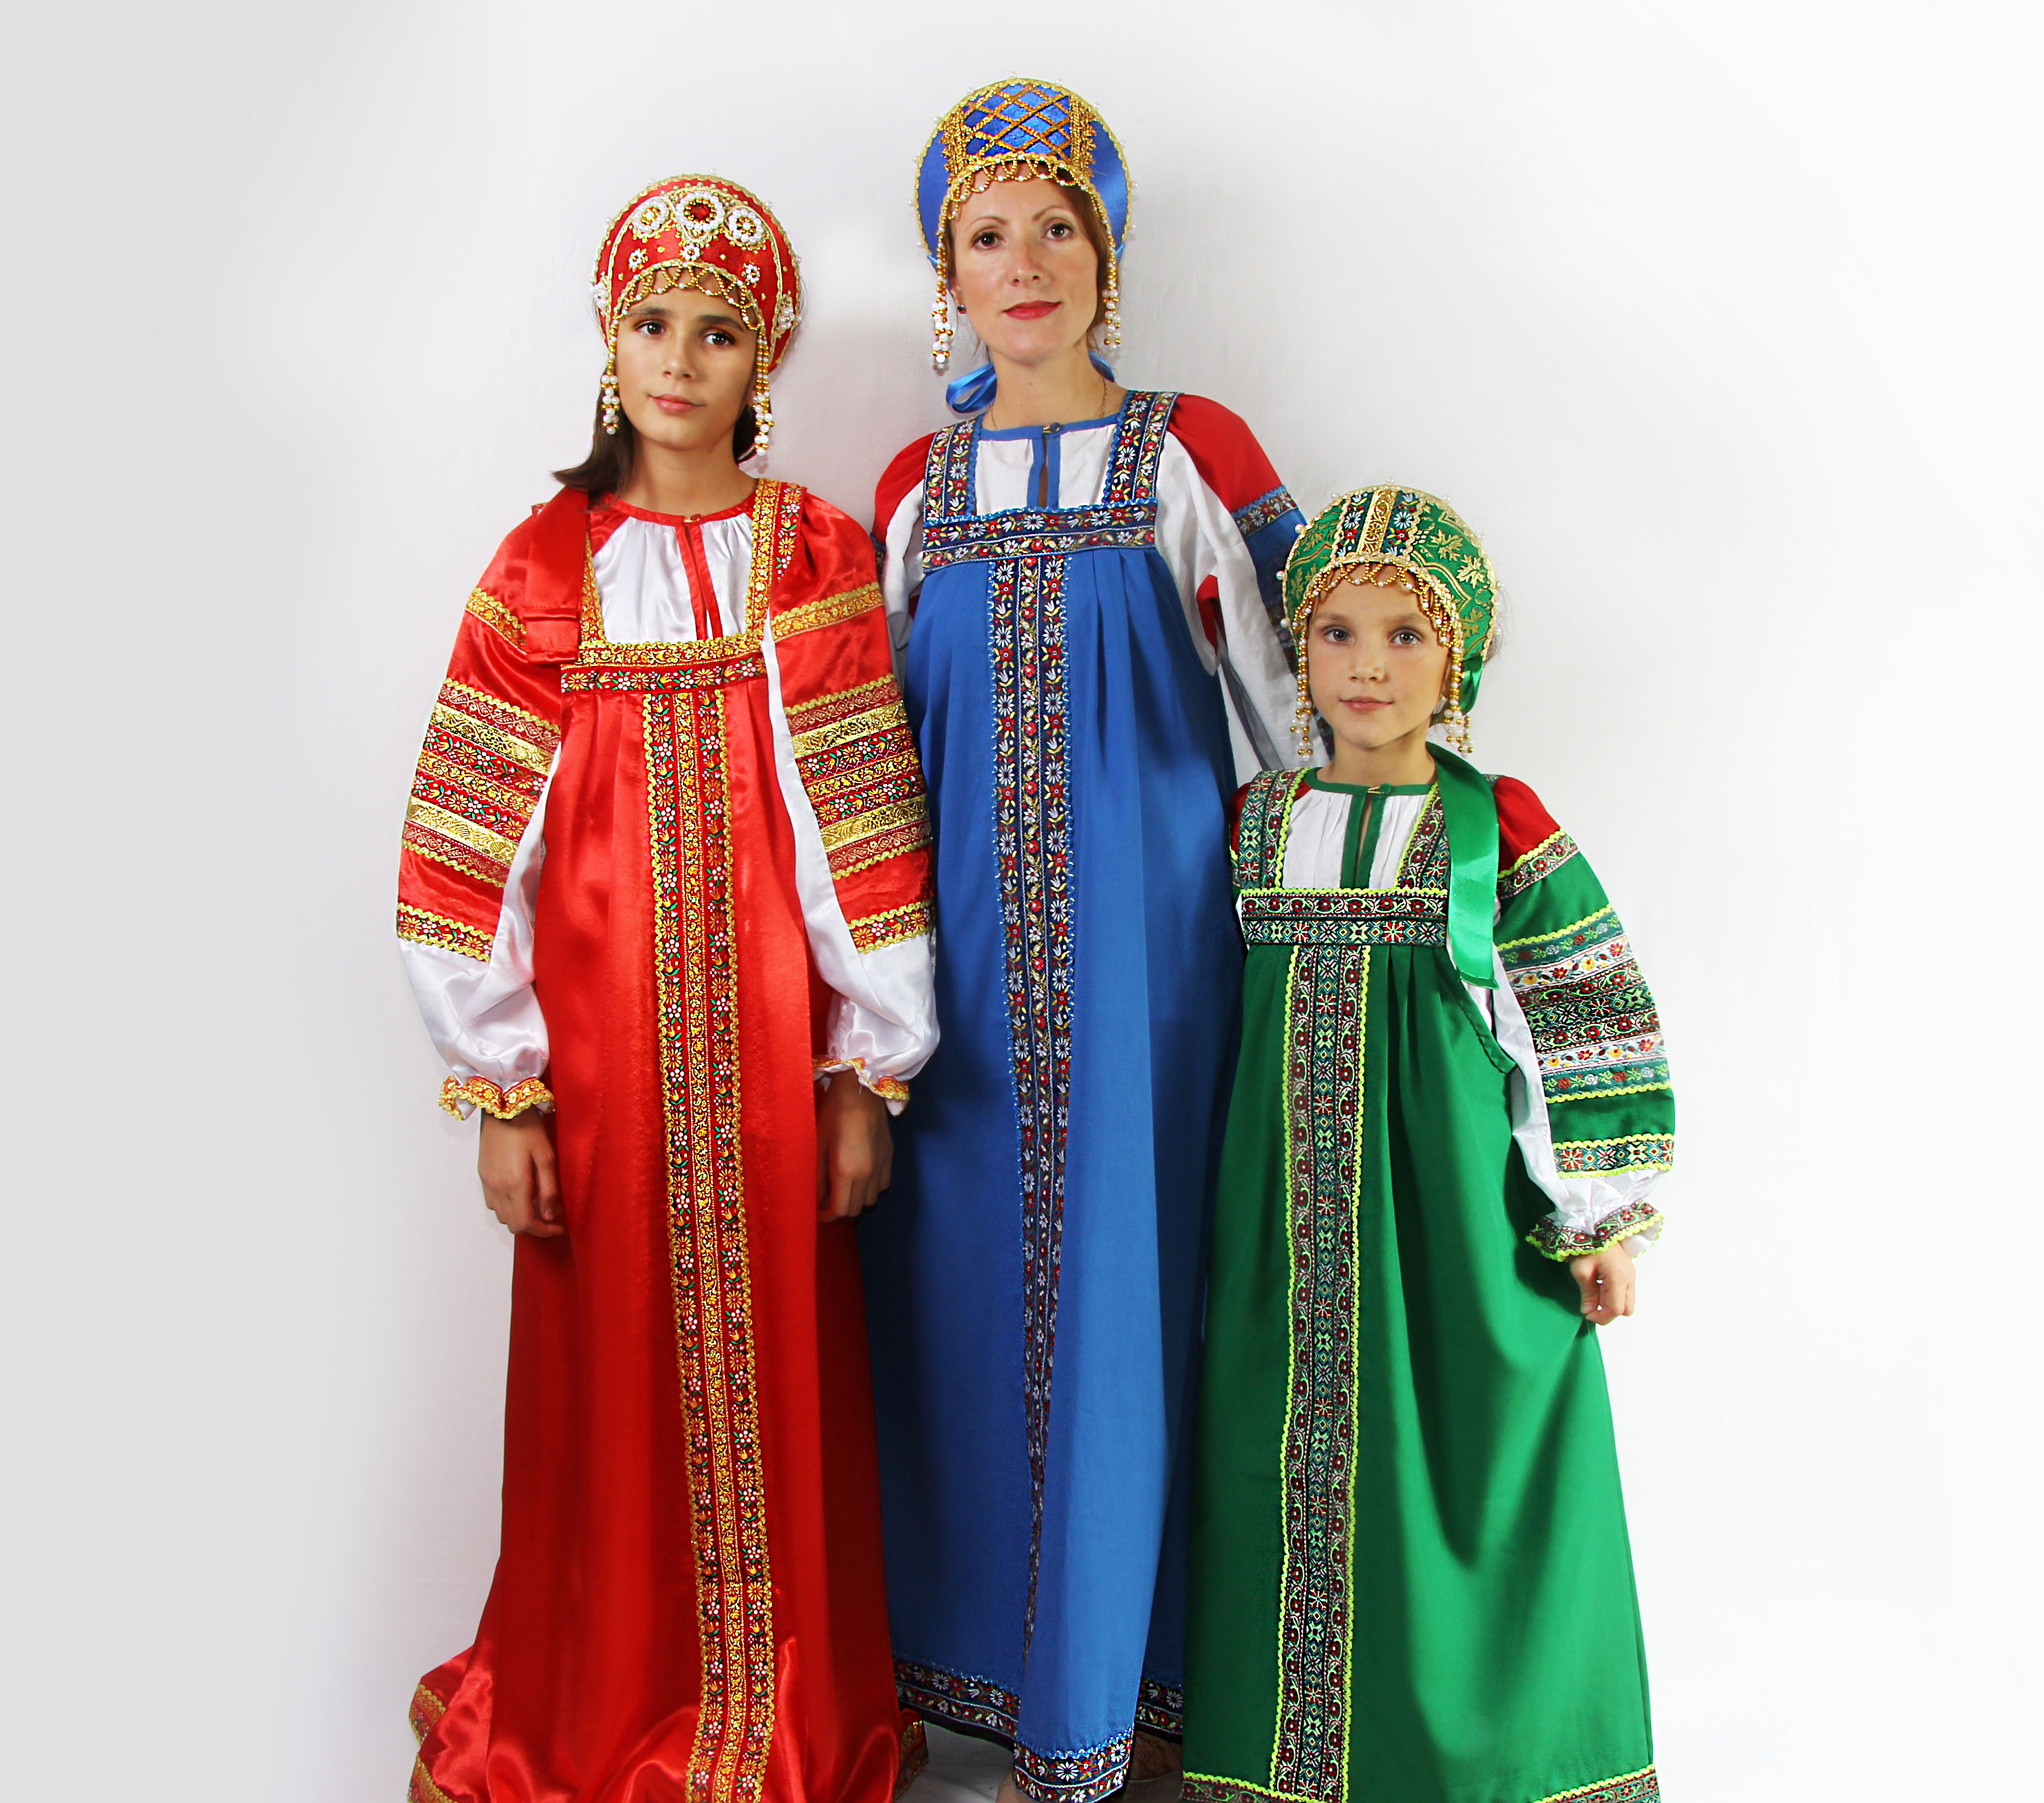 Traditional russian dress Dunyasha for girl - Folk Russian clothing ...